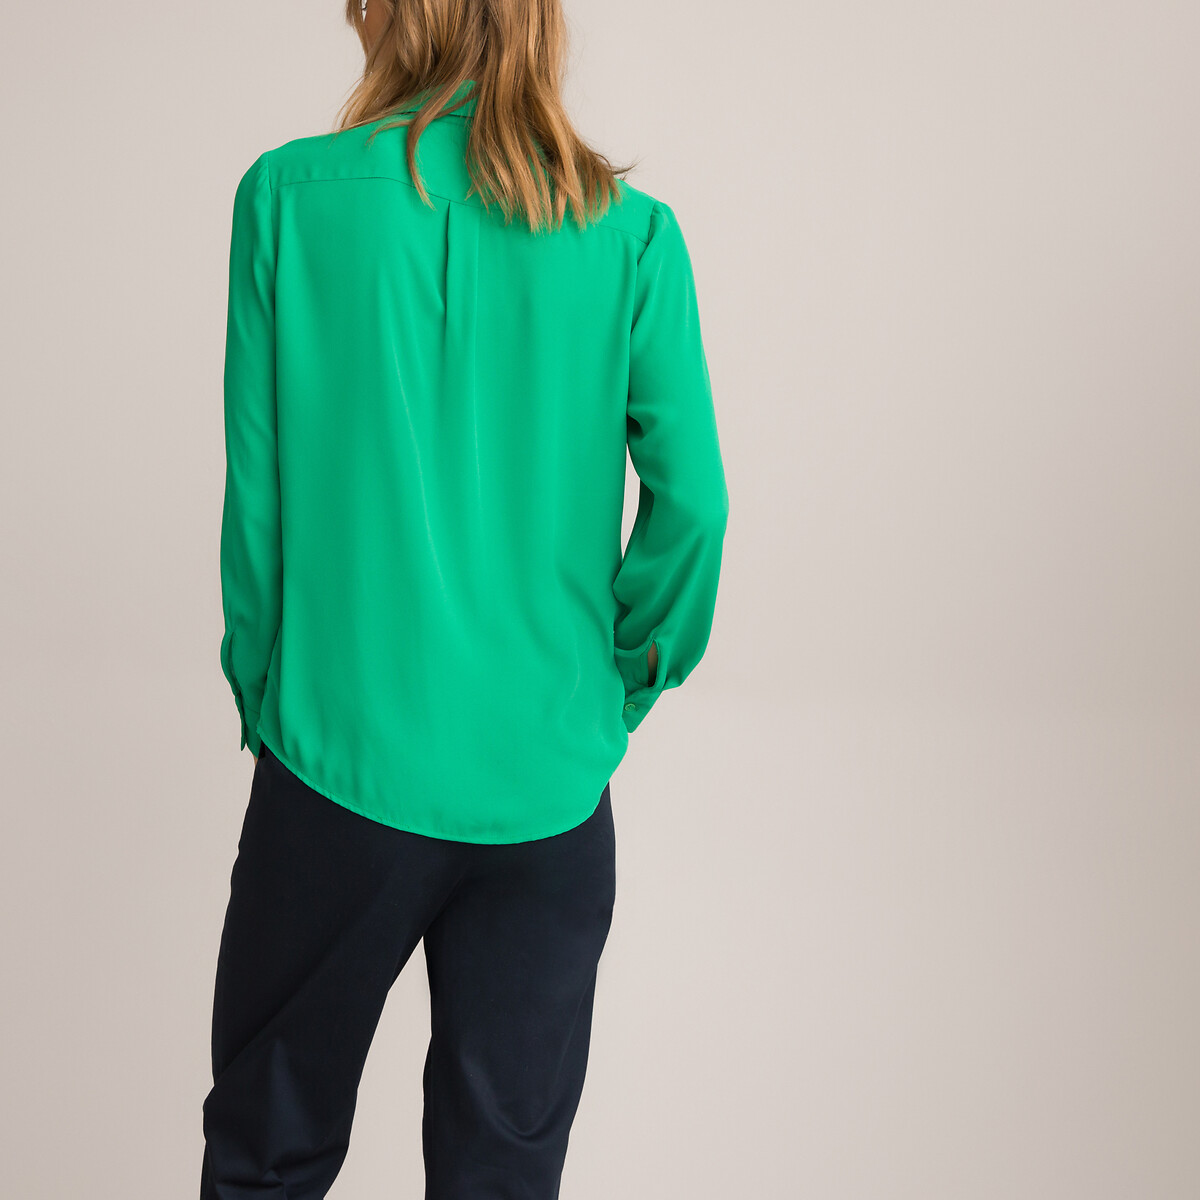 Блузка LA REDOUTE COLLECTIONS Блузка С длинными рукавами 36 (FR) - 42 (RUS) зеленый, размер 36 (FR) - 42 (RUS) Блузка С длинными рукавами 36 (FR) - 42 (RUS) зеленый - фото 4